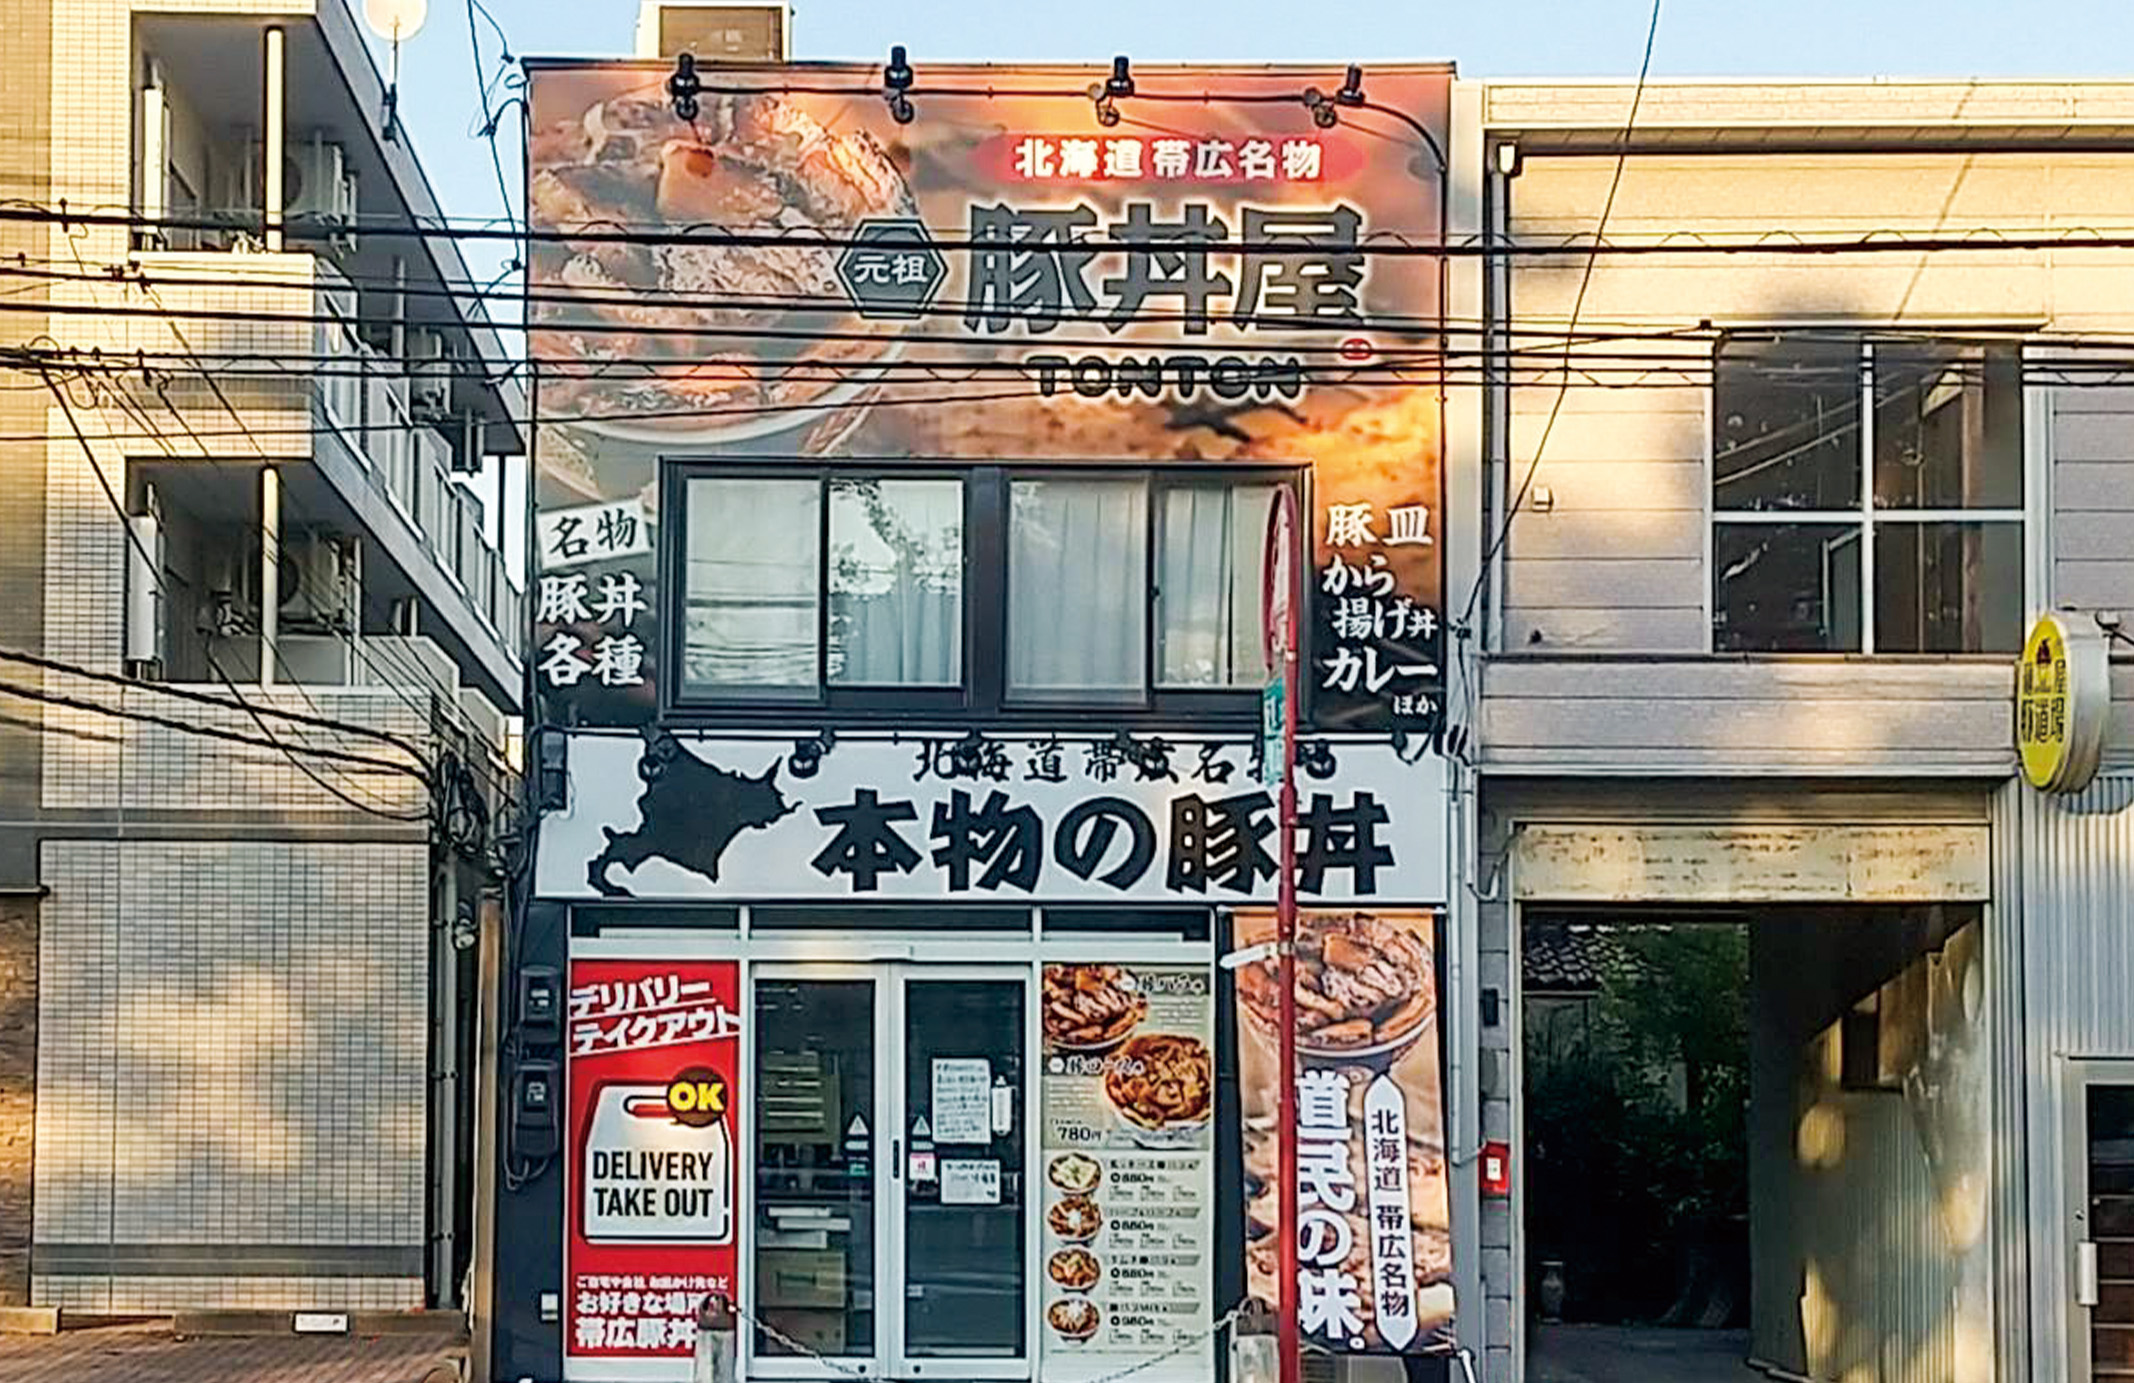 元祖豚丼屋TONTON 富山大学前店グランドオープン